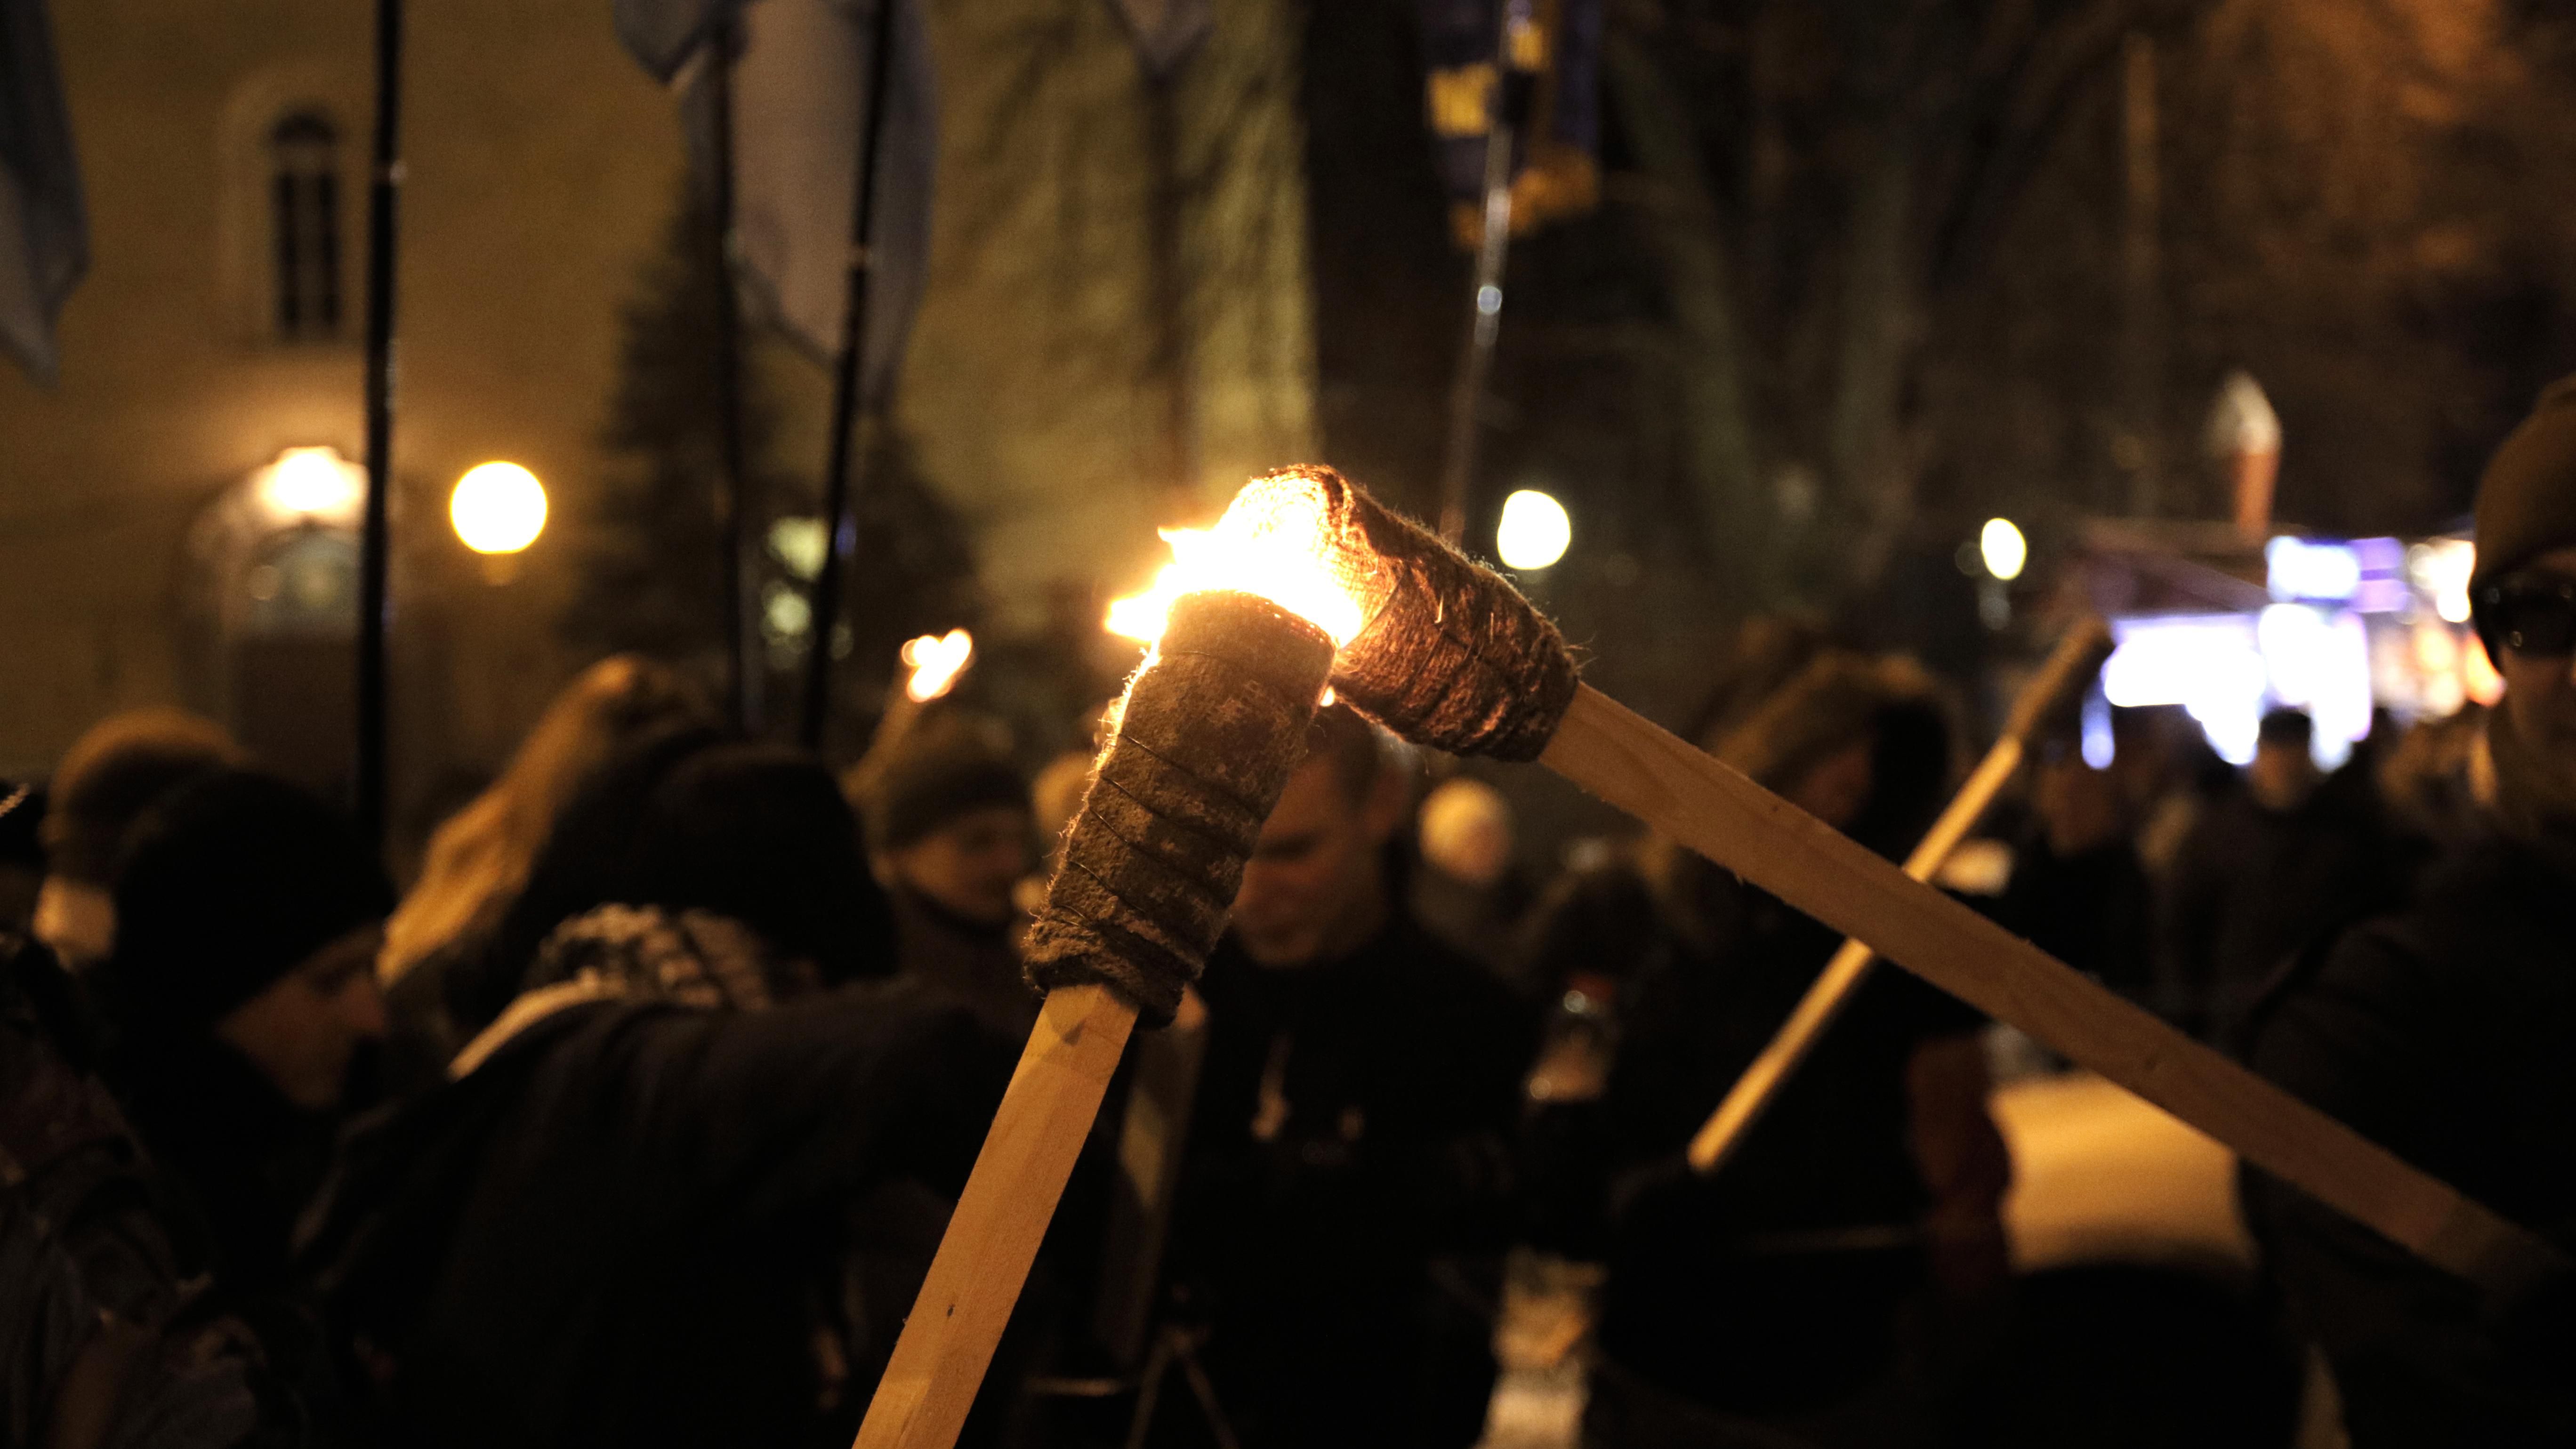 Появились фото и видео эффектного факельного шествия в Киеве